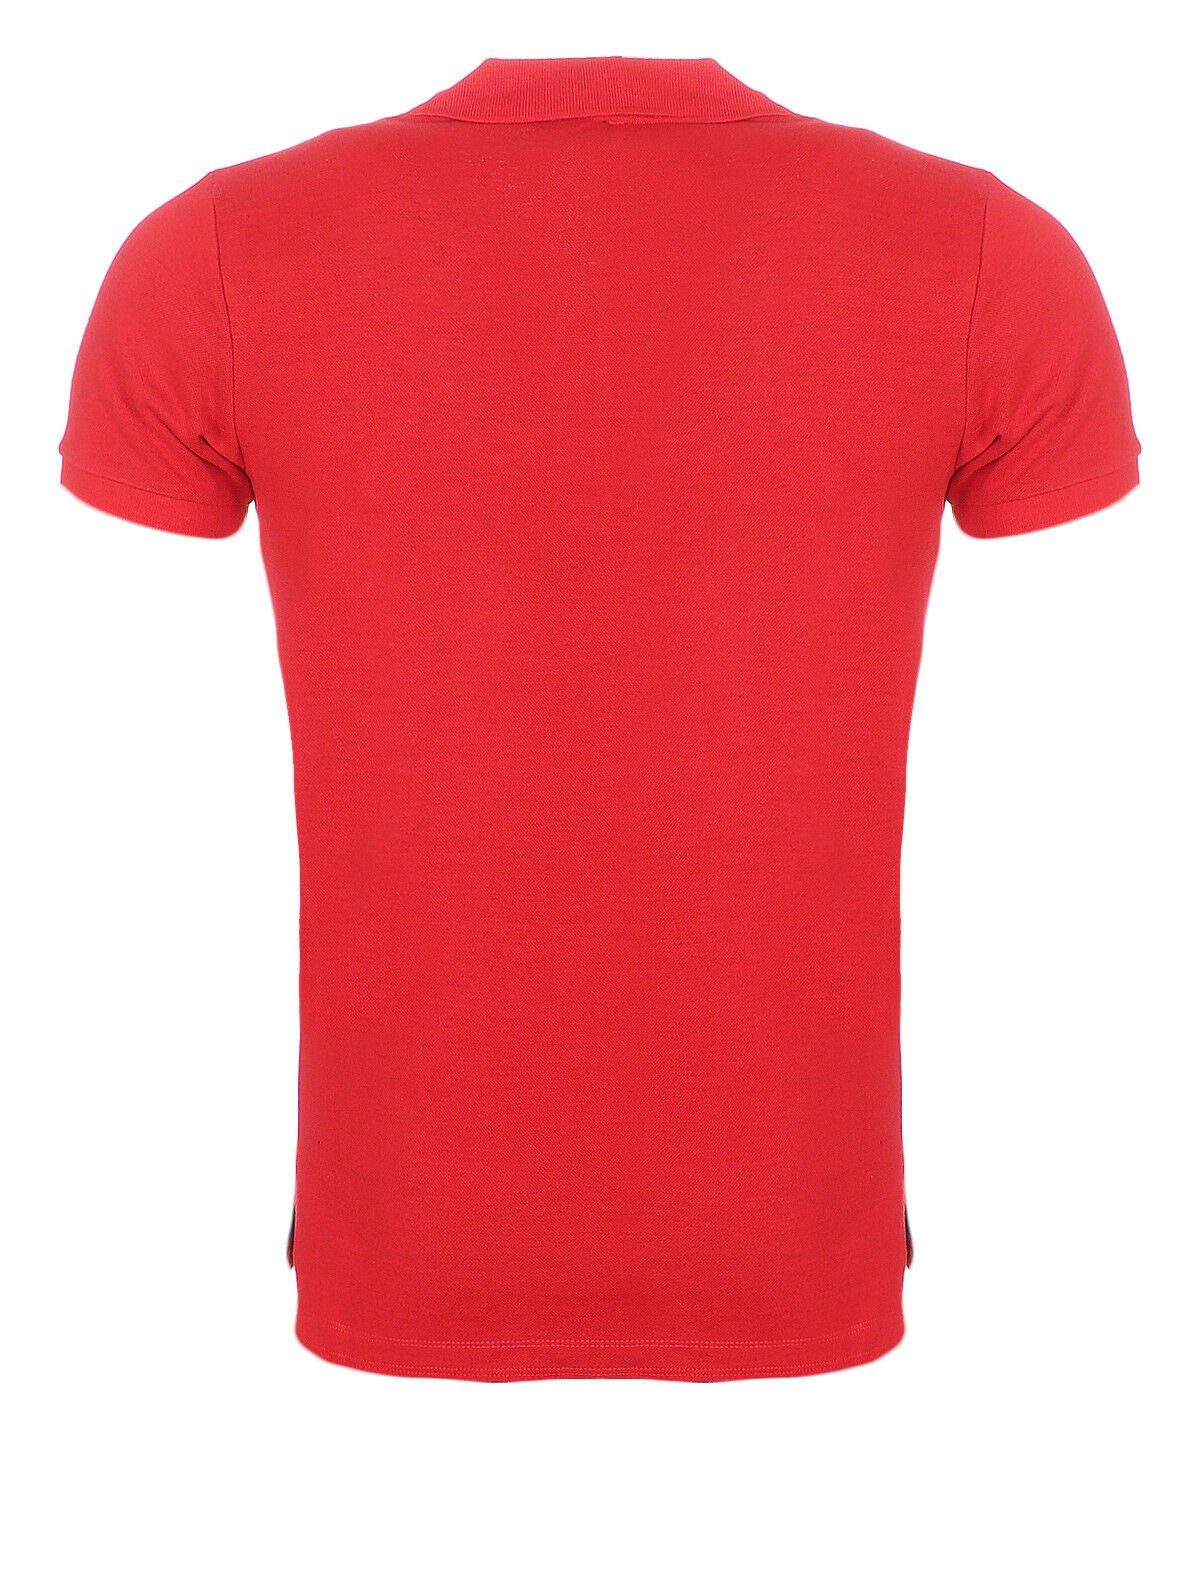 mit Diesel Herren T-EYE Rot Reißverschluss, Labelstitching Poloshirt Rundhalsausschnitt, mit Diesel im Brustbereich unifarben, Poloshirt